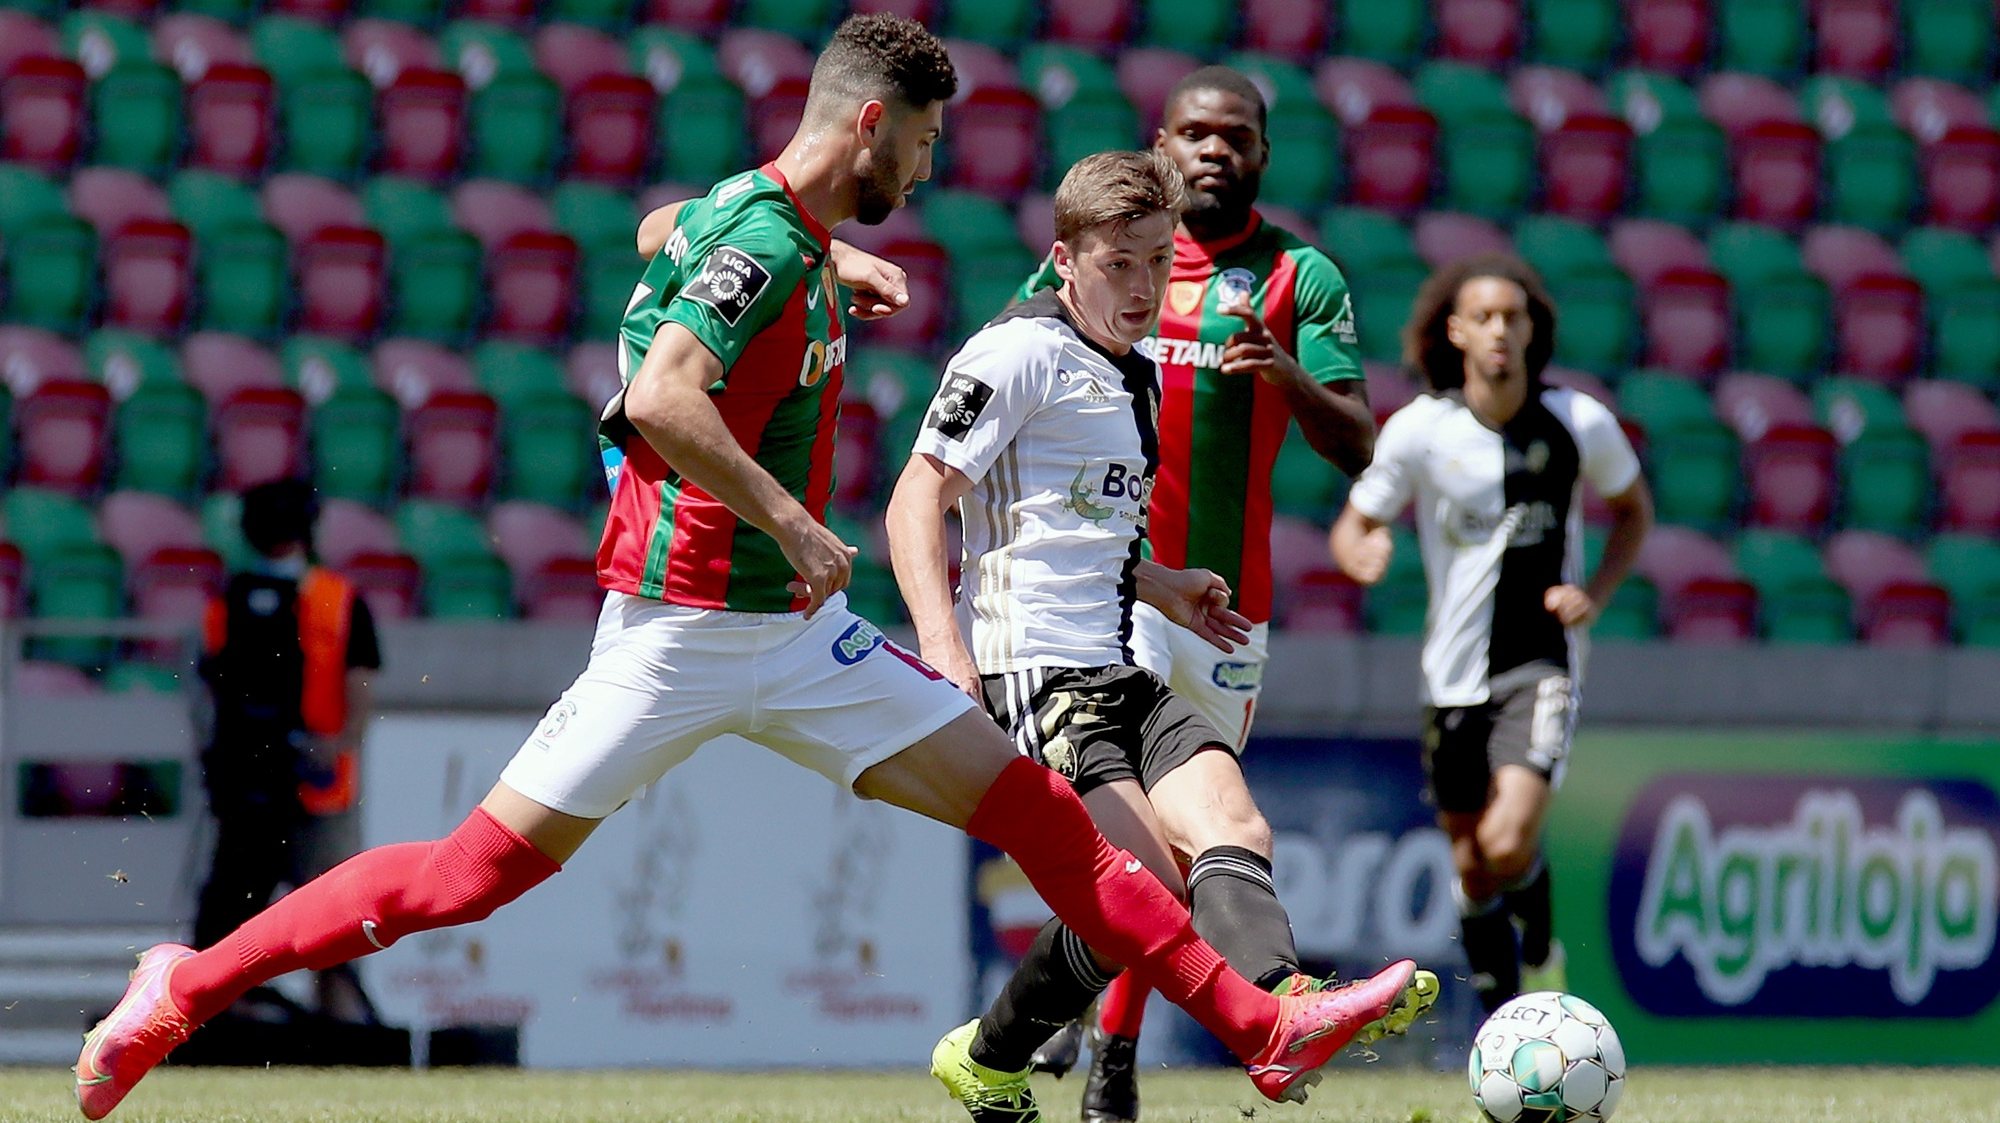 O jogador do Marítimo, Leo Andradre (E), disputa a bola com o jogador do Farense, Gauld (D), durante o jogo da Primeira Liga de futebol realizado no Estádio do Marítimo, no Funchal, 10 de abril de 2021, HOMEM DE GOUVEIA/LUSA